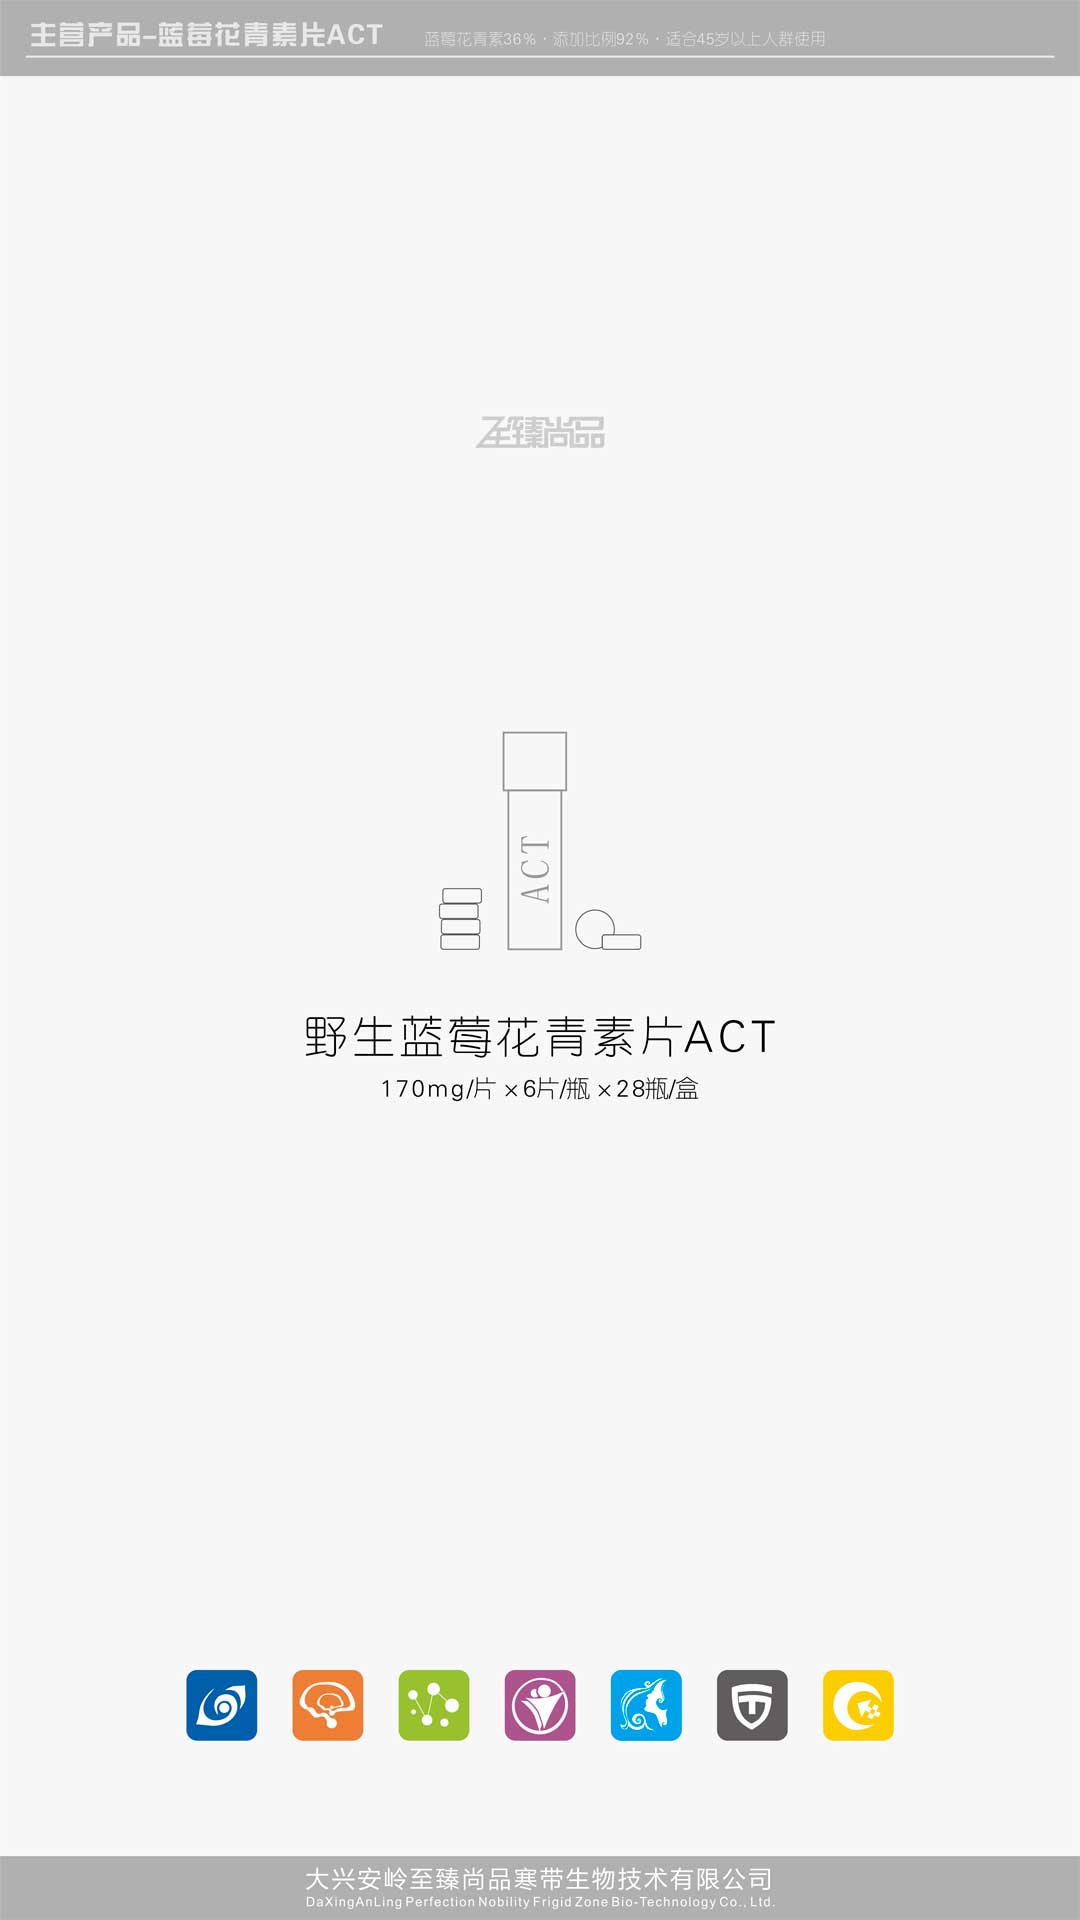 至臻尚品-ACT-野生蓝莓花青素片-01.jpg